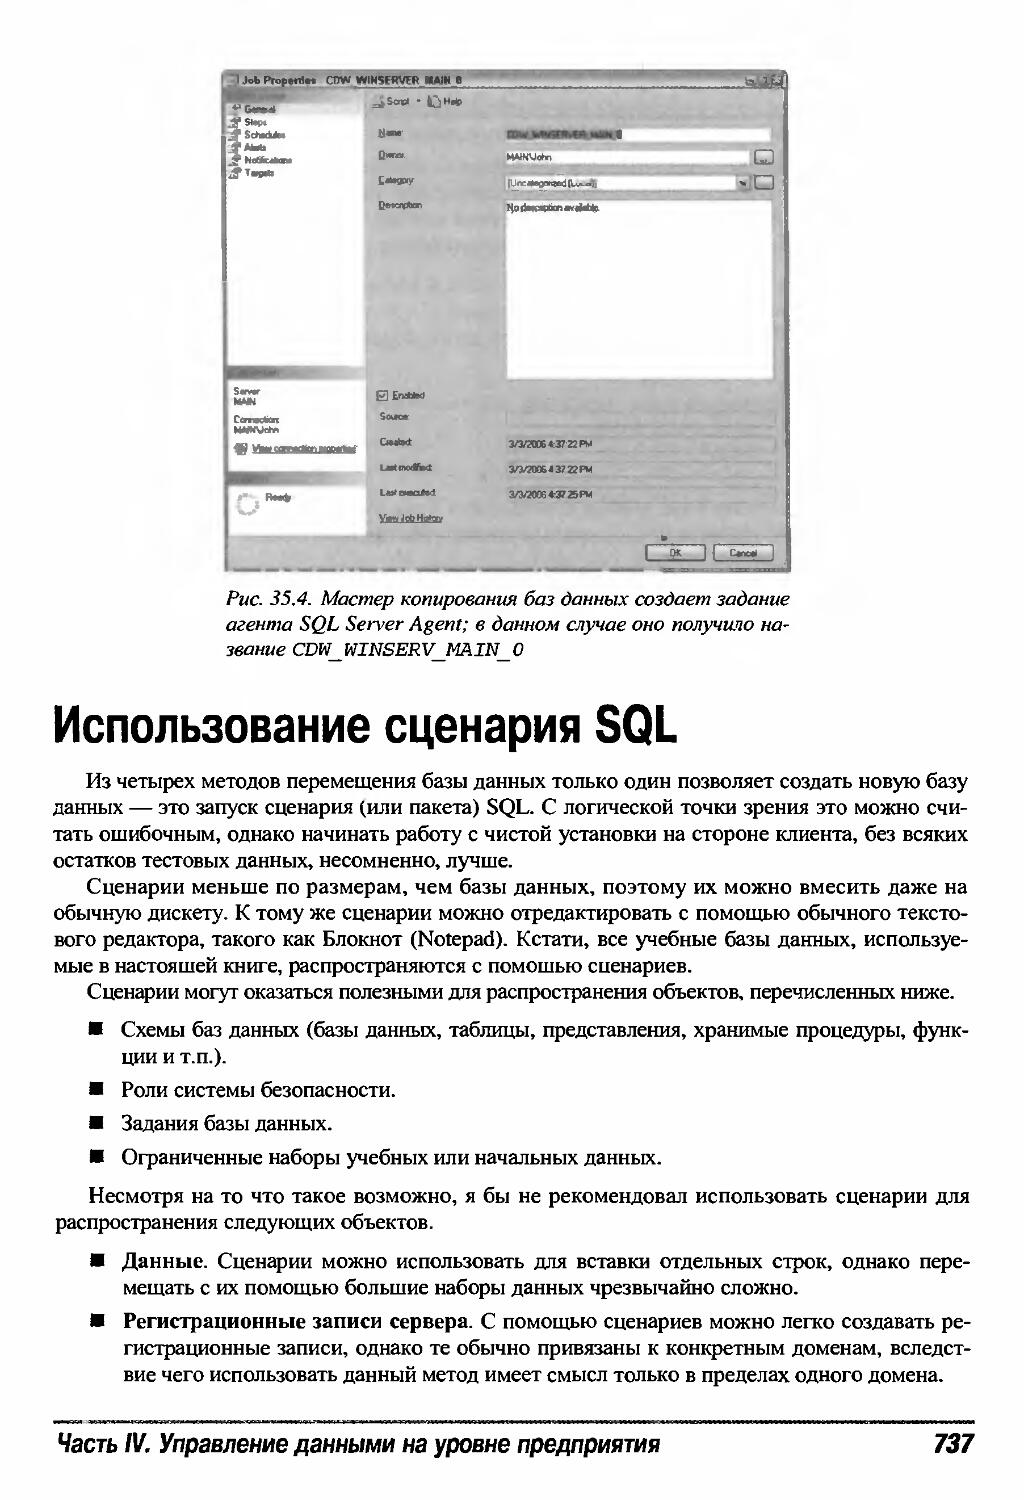 Использование сценария SQL